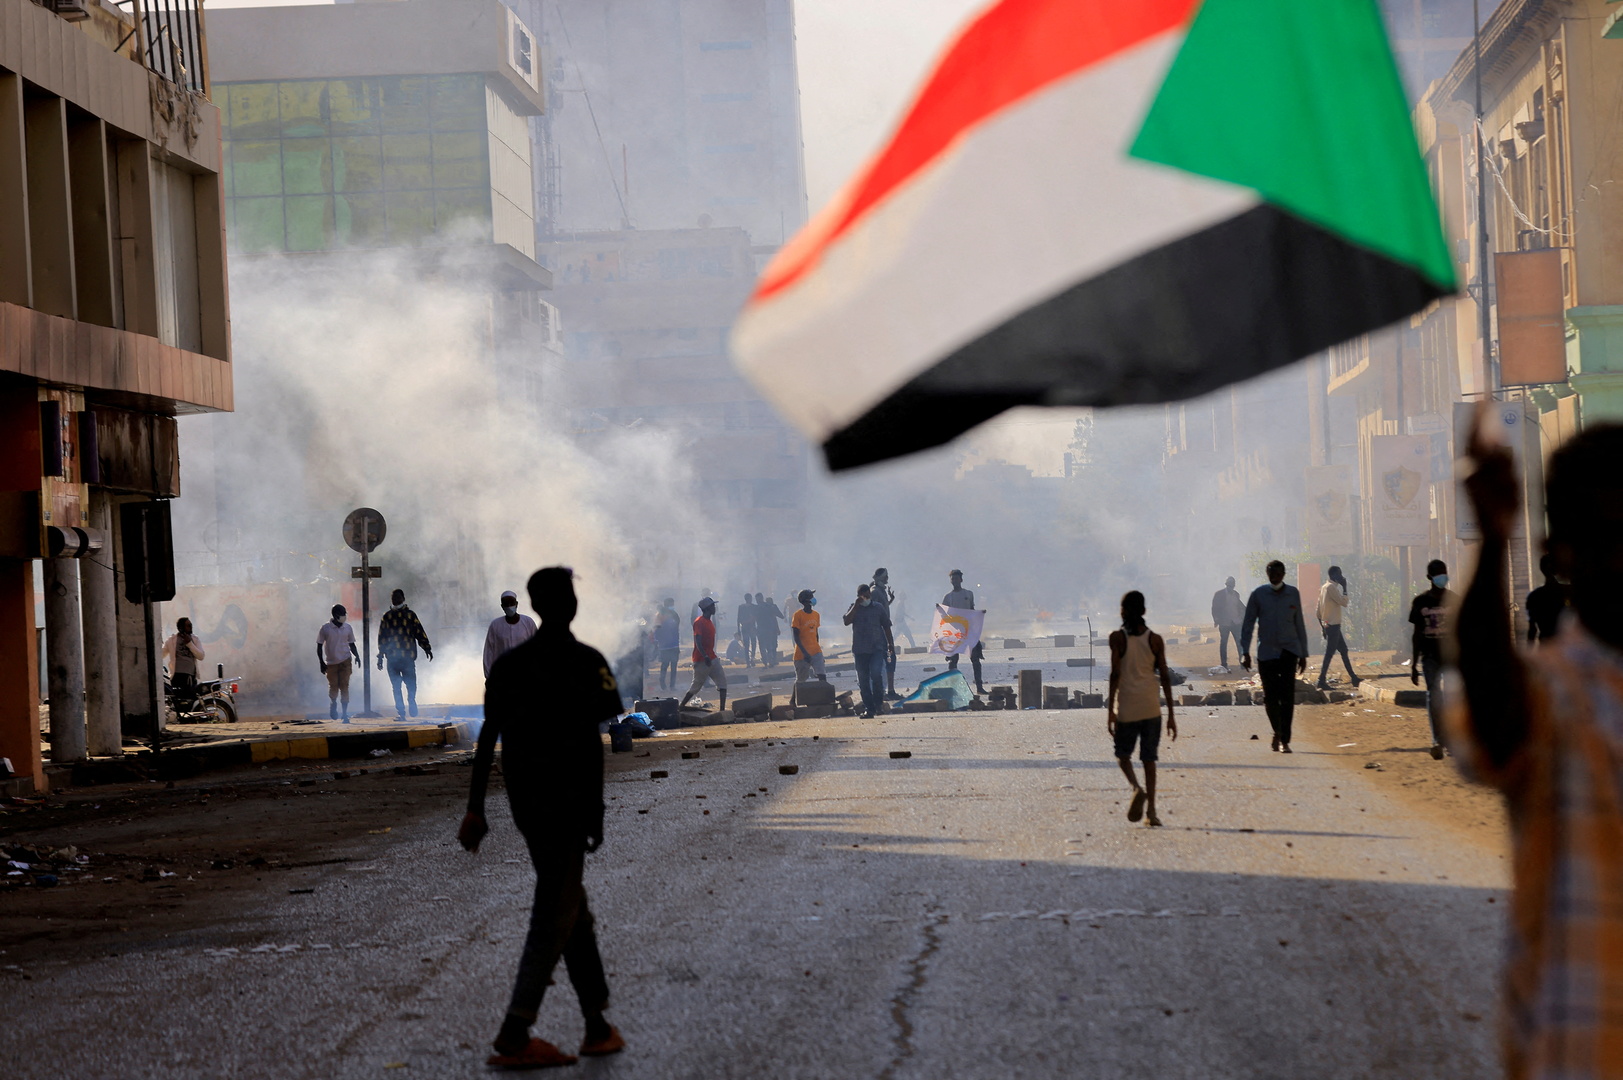 (Sudan güvenlik güçleri, darbe karşıtı protestocular cumhurbaşkanlığı sarayına giderken göz yaşartıcı gaz sıktı. / Kaynak: Reuters)